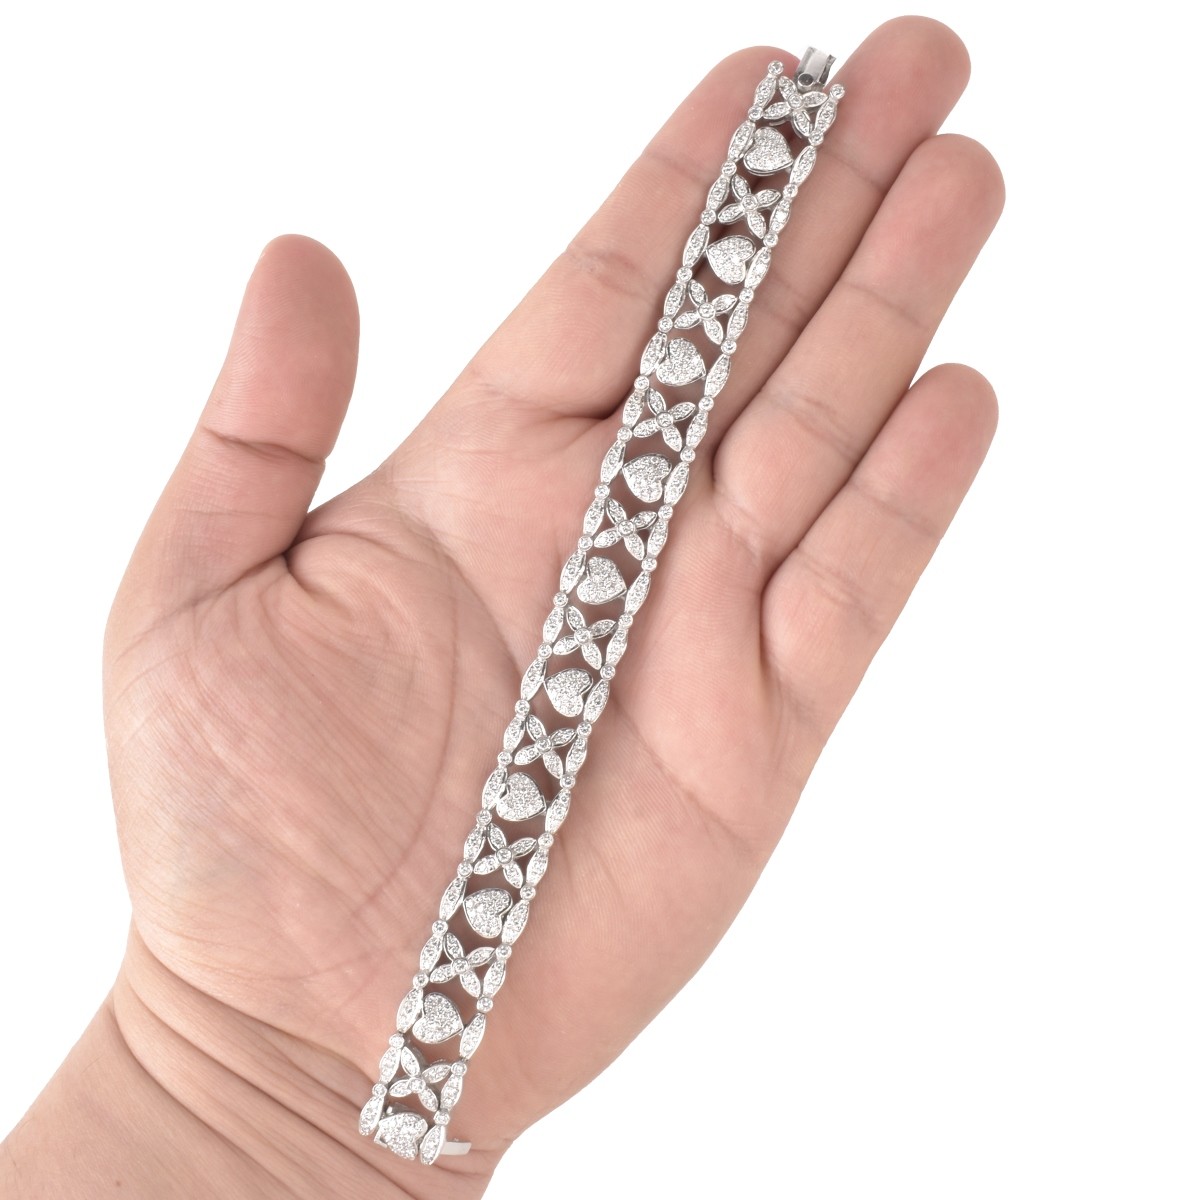 Diamond and 14K Bracelet